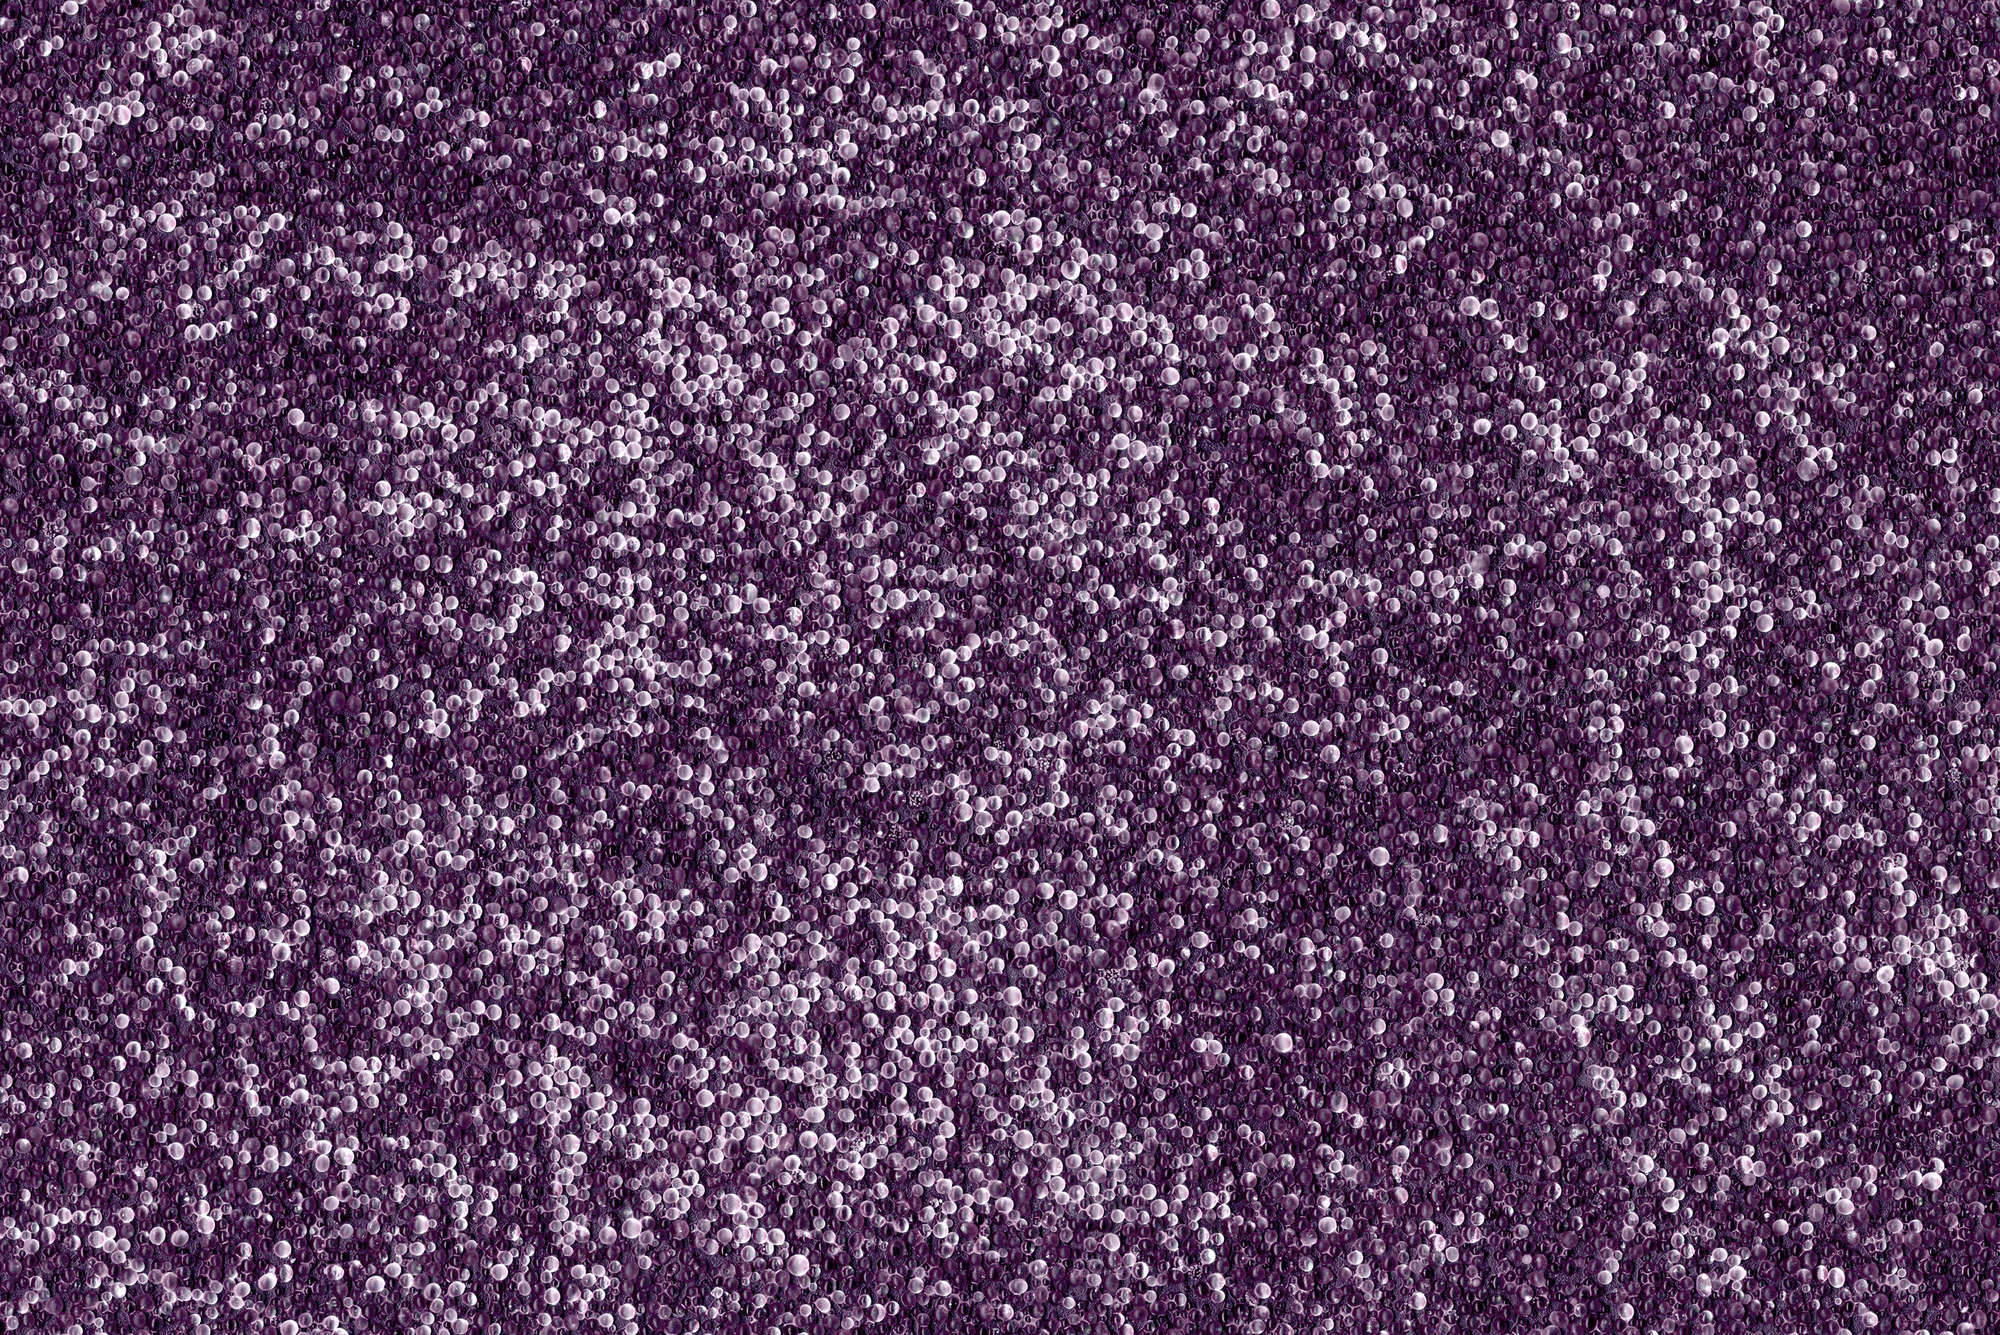             Digital behang veel kleine knikkers in paars - parelmoer glad vlies
        